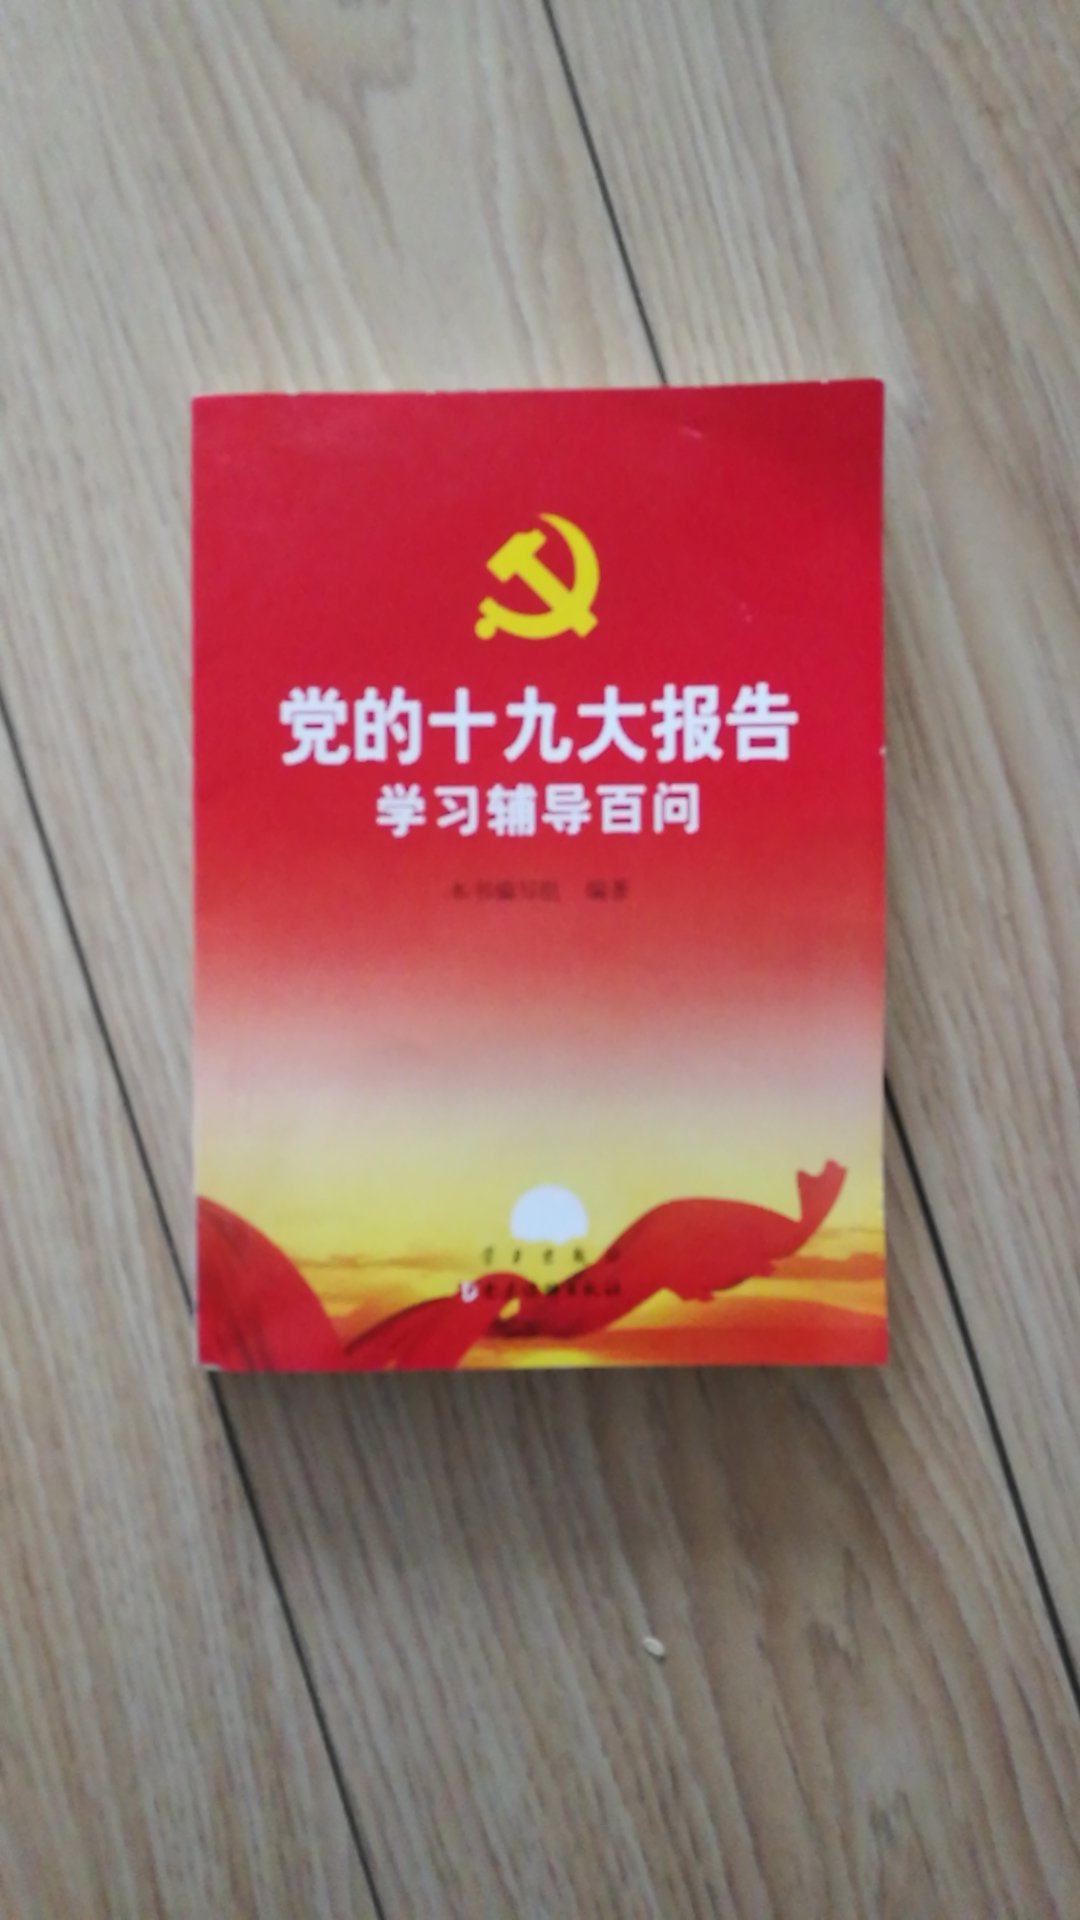 挺好的书，对十九大有了更深的认识，一部十九大报告，就是为了三十年中国的发展路线图和基本方略